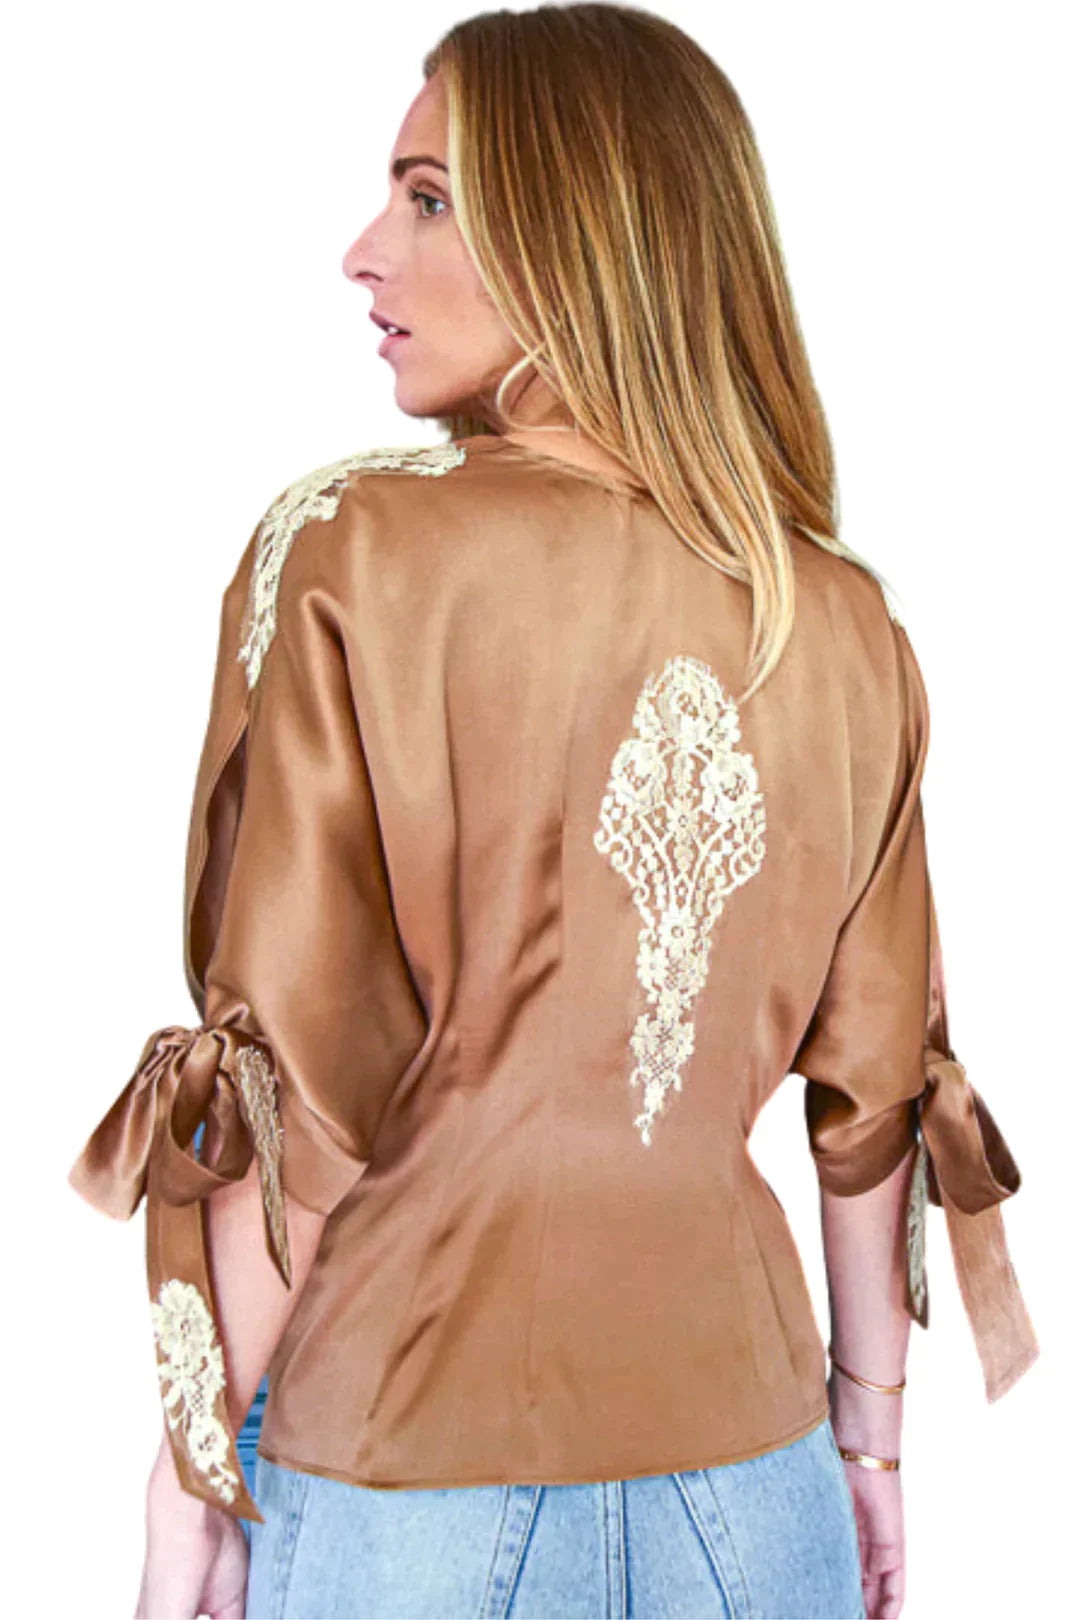 Vanita Rosa Blouse Neo Silk - Premium Shirts & Tops from Marina St Barth - Just $699! Shop now at Marina St Barth